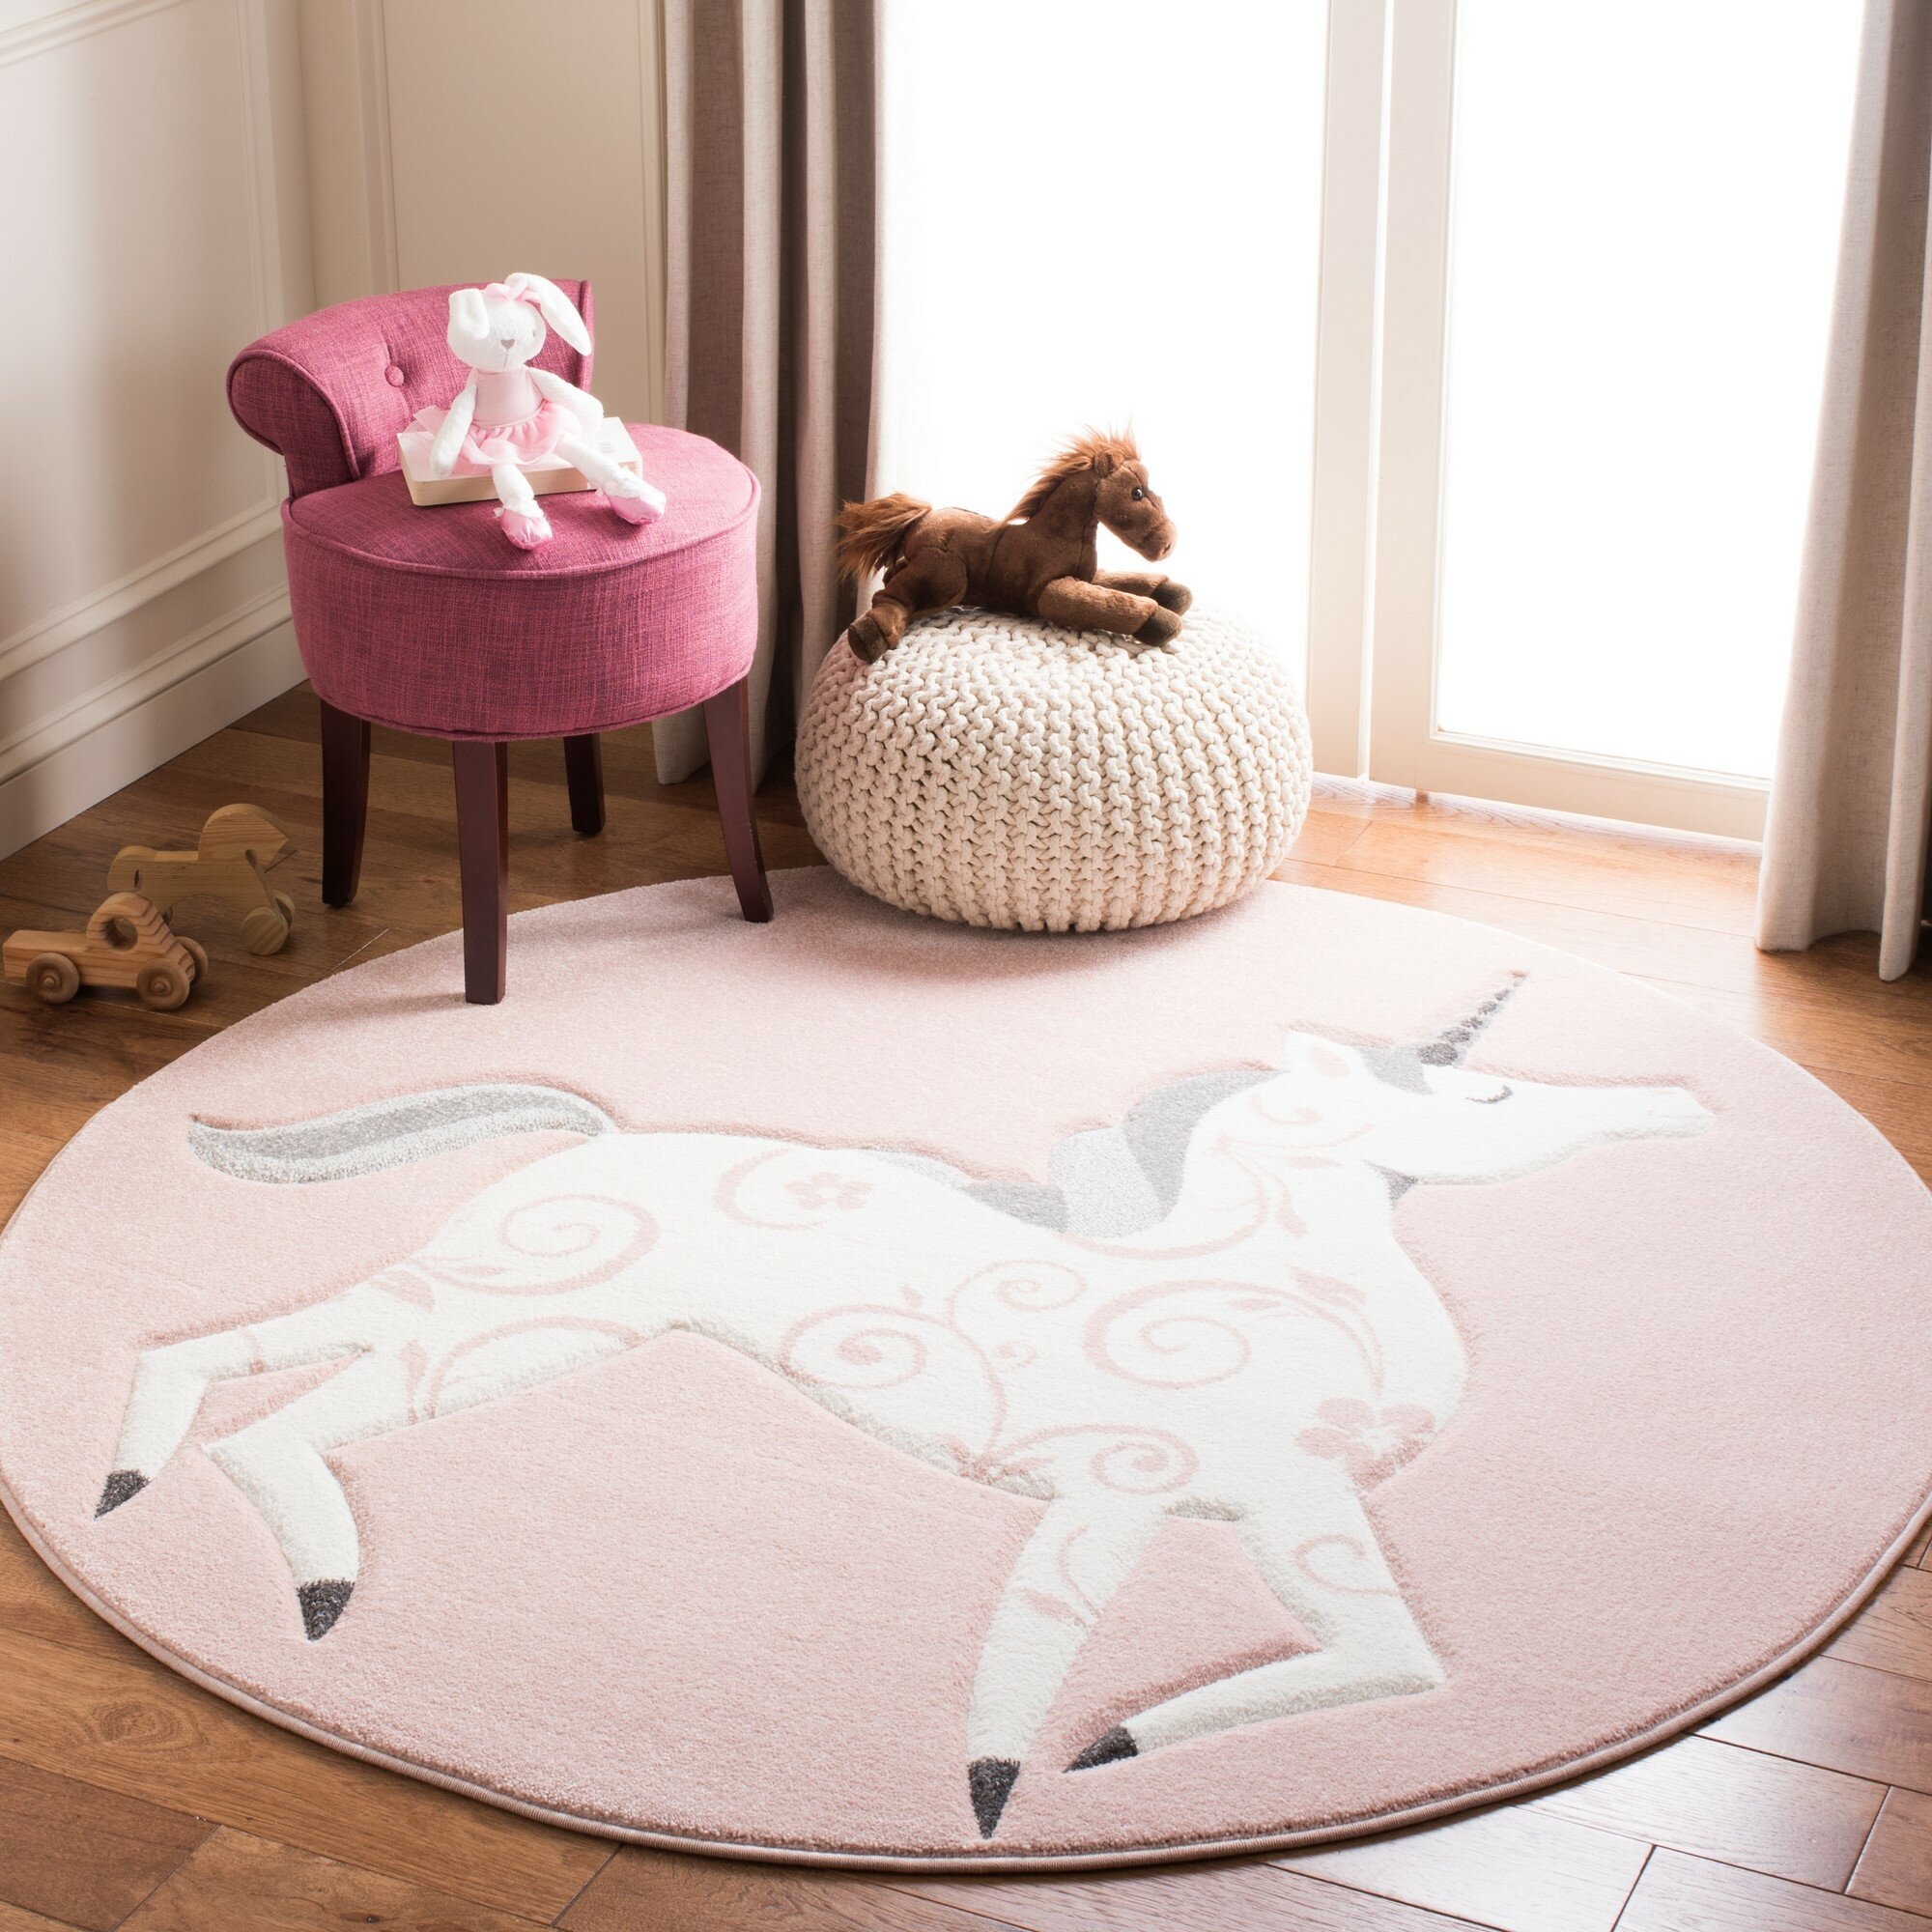 Pink Nursery Rug Kids Bedroom Animal Star Patterned Circle Rugs Childrens Carpet 